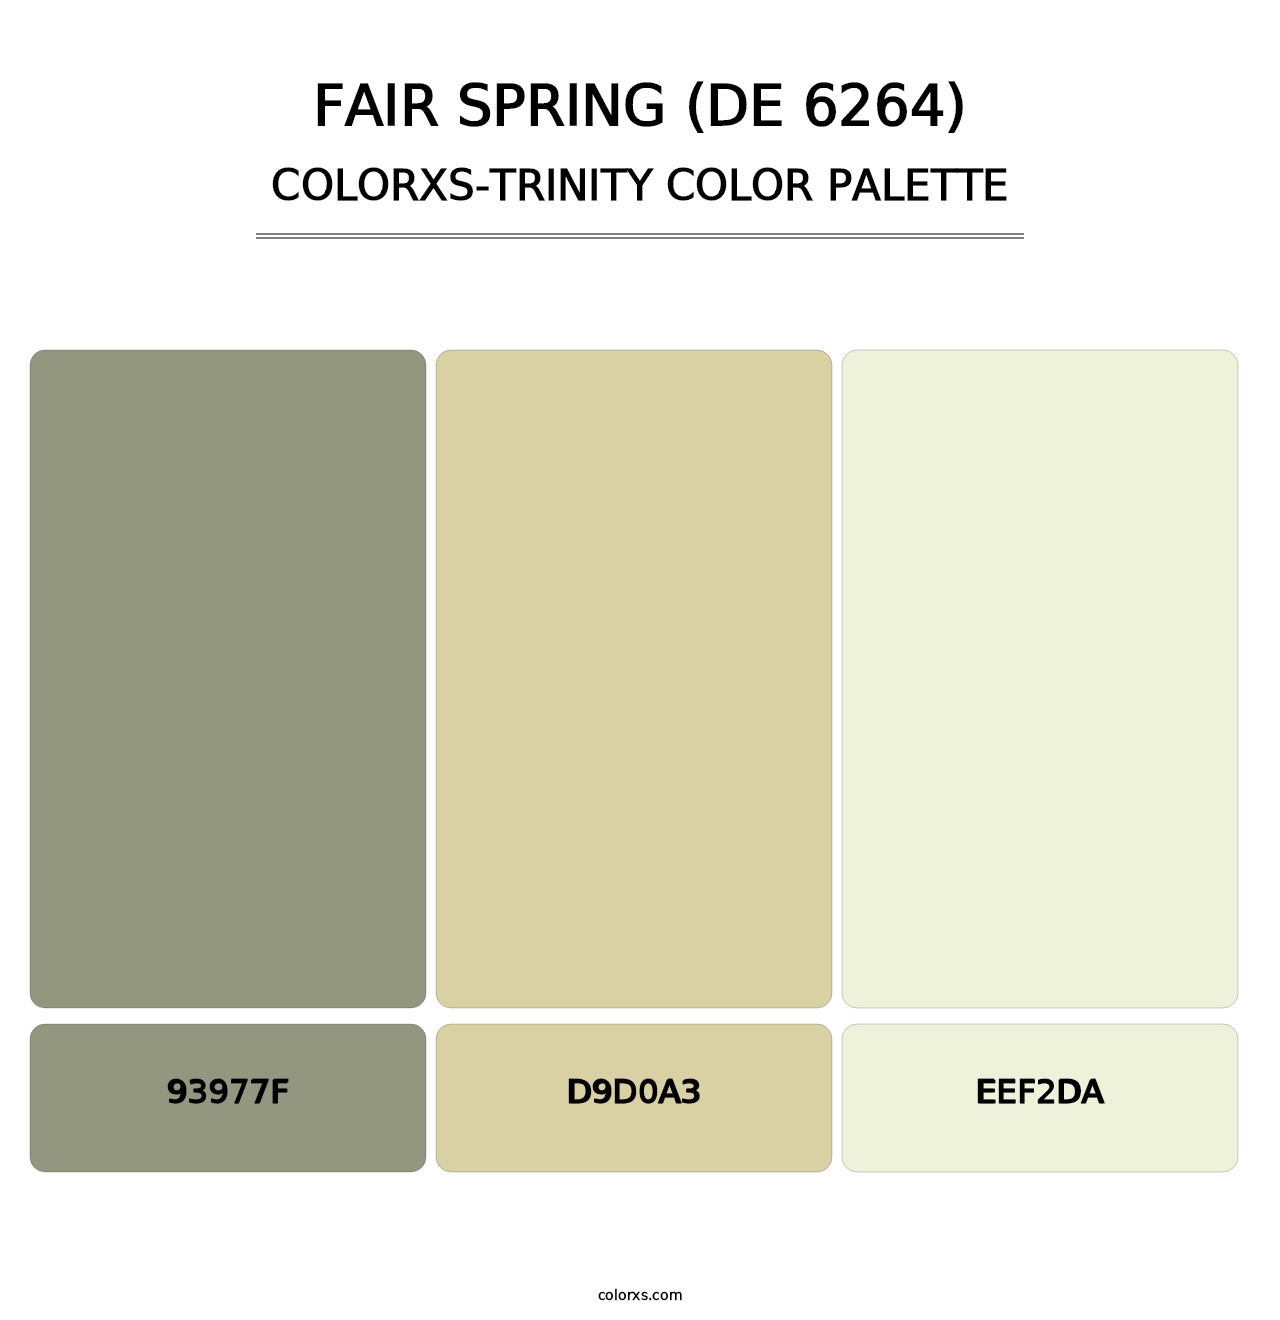 Fair Spring (DE 6264) - Colorxs Trinity Palette